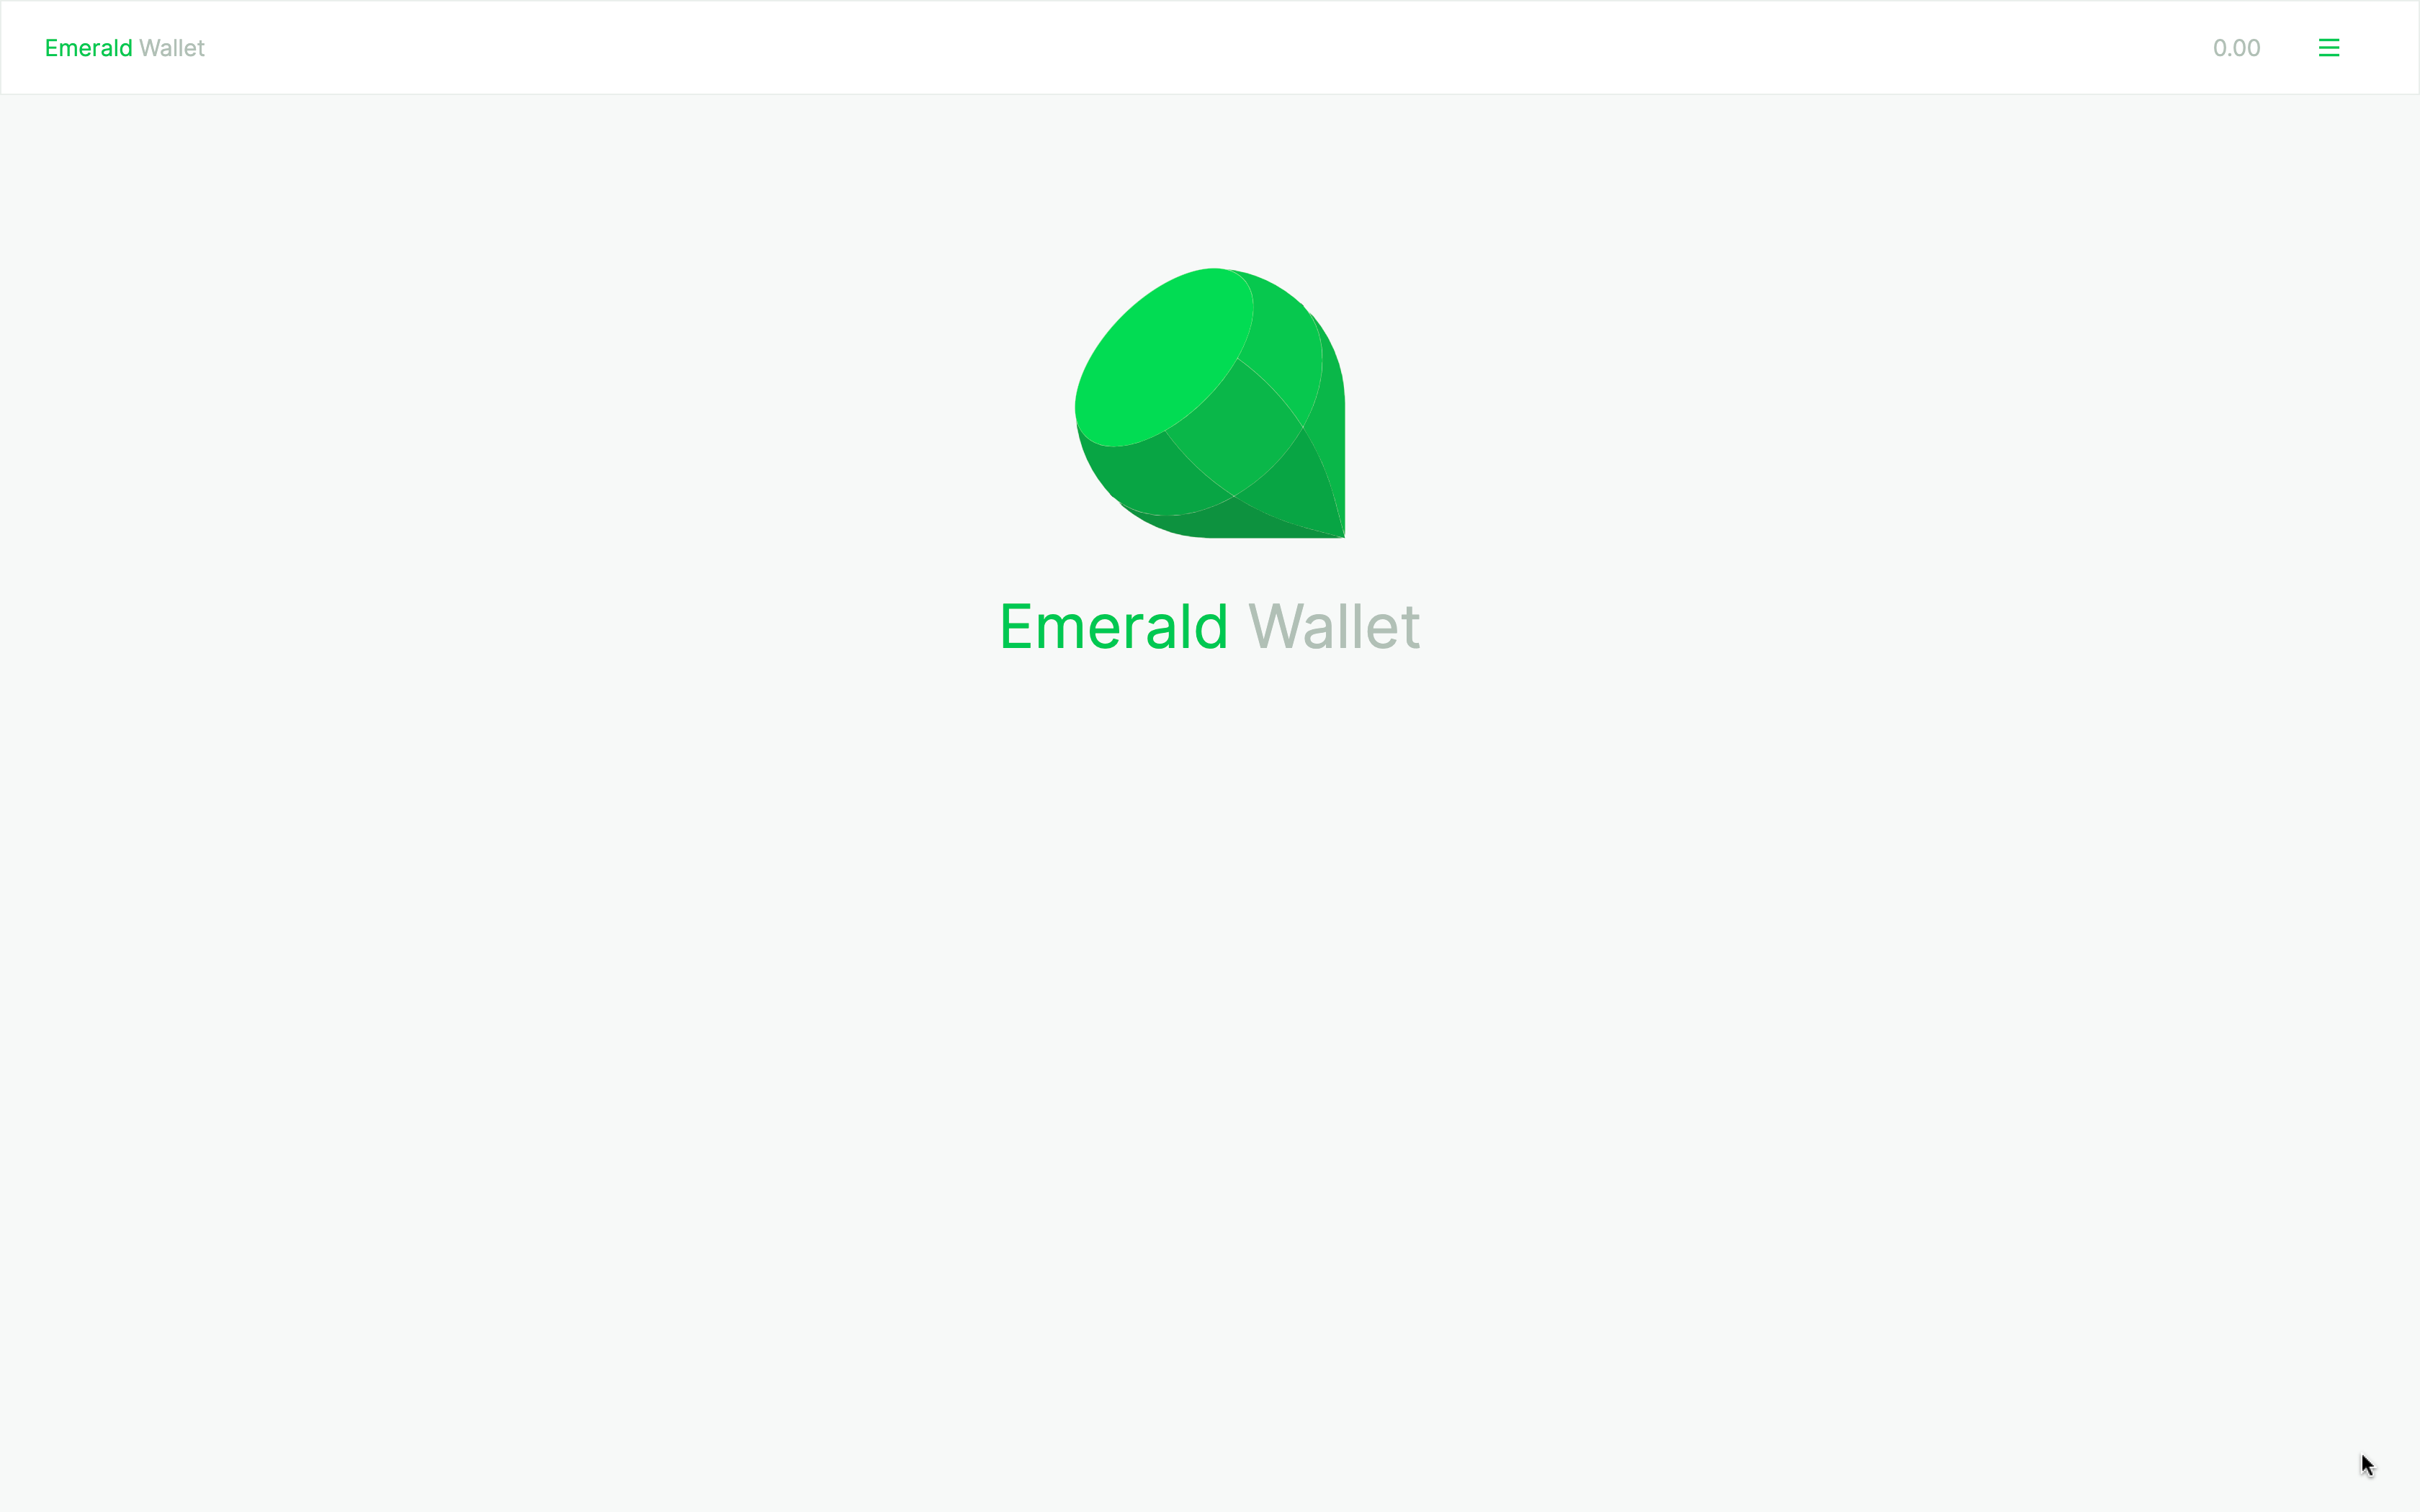 Emerald welcome screen.